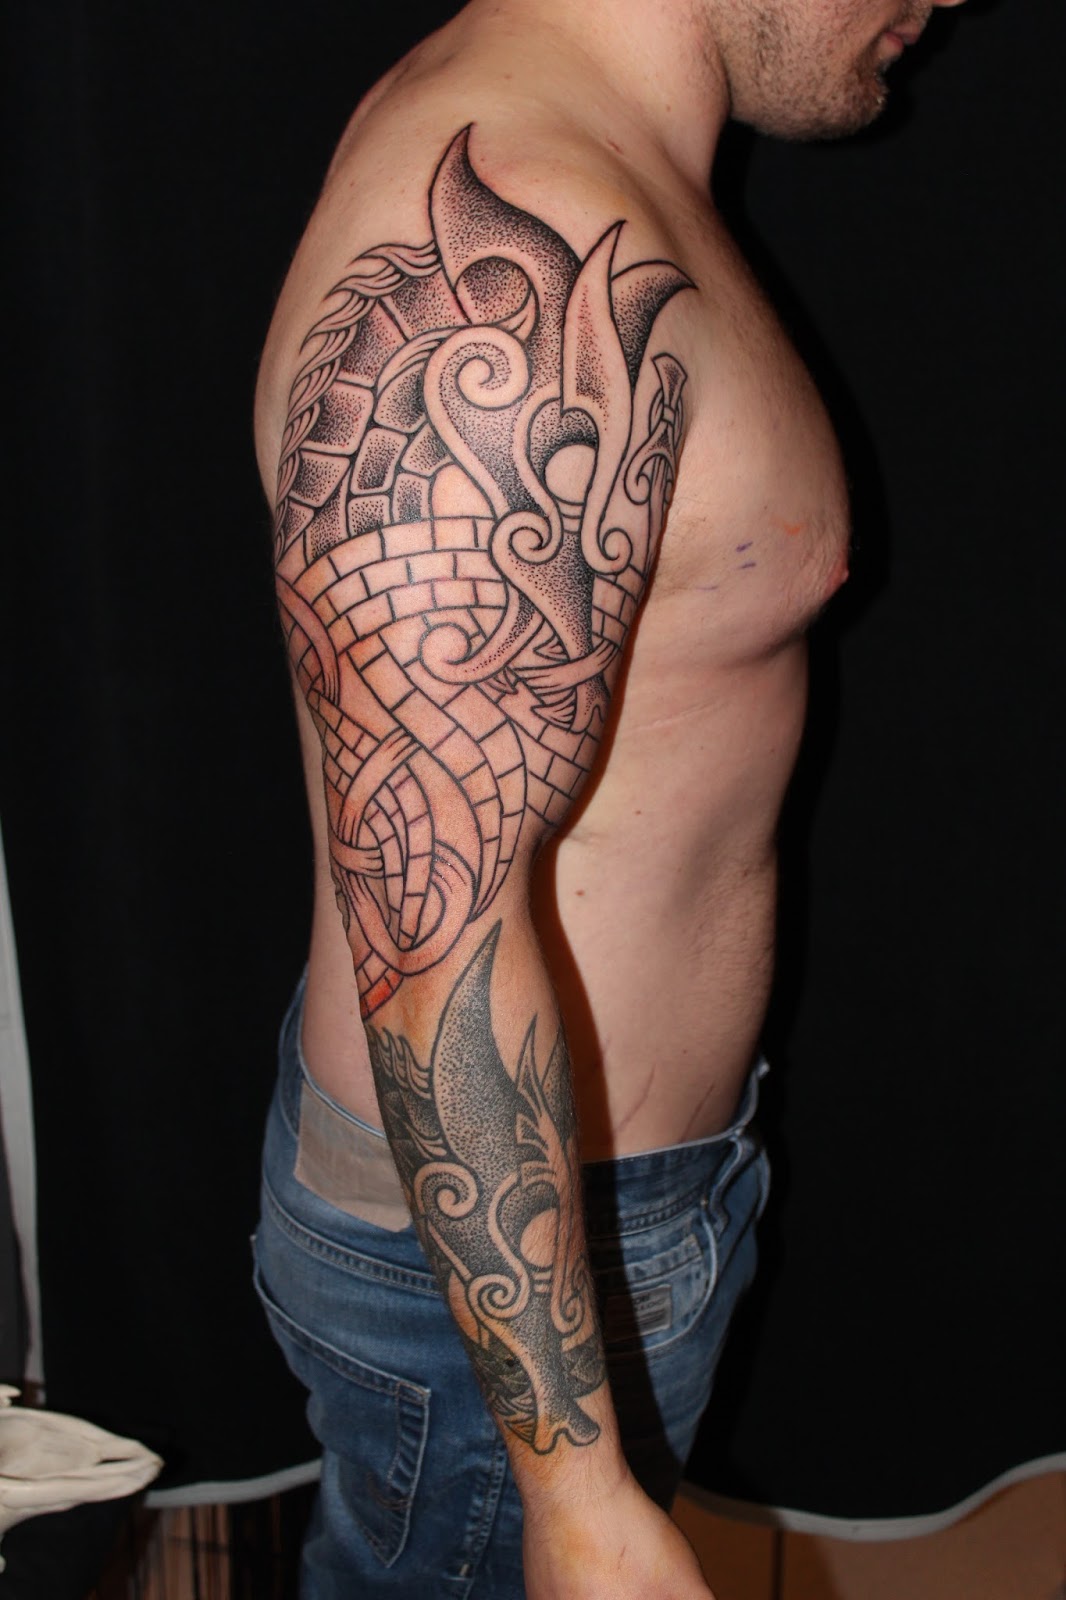 SKiN&BoNE: Artistic Process: Machine Tattooing